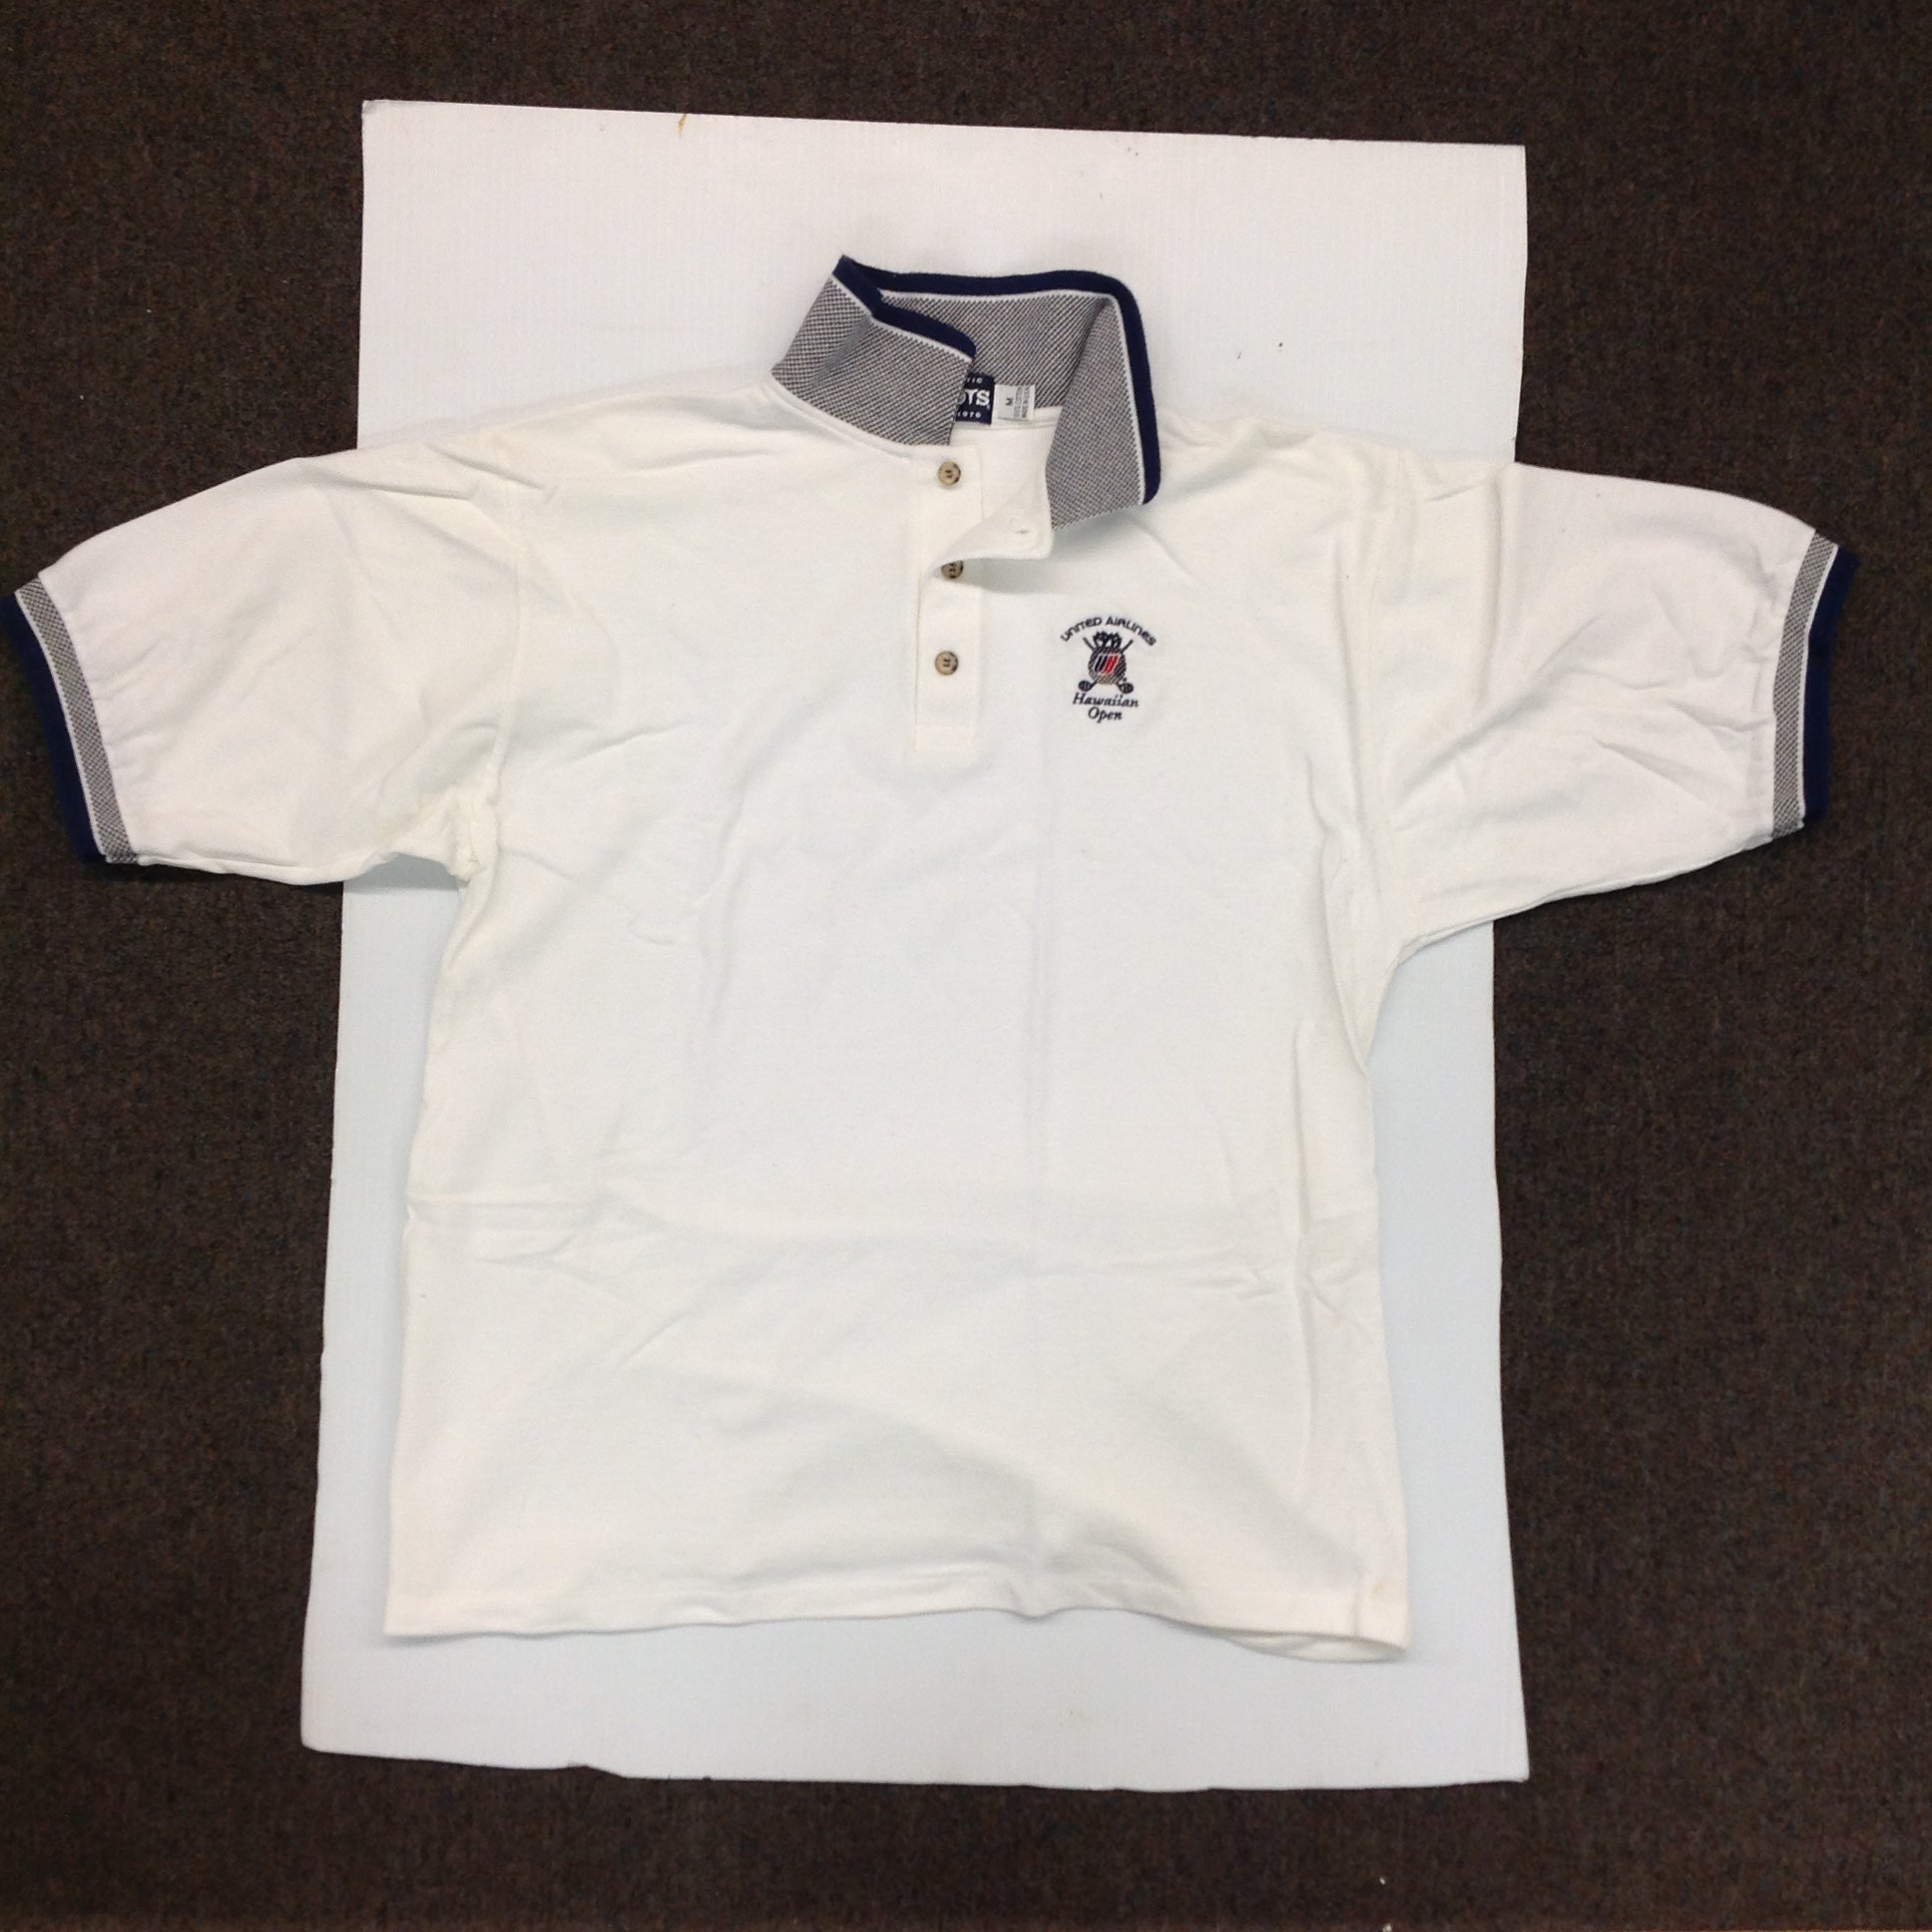 Vintage 1996 Authentic Divots White Cotton Men's Medium Souvenir United Airlines Hawaiian Open Golf Shirt